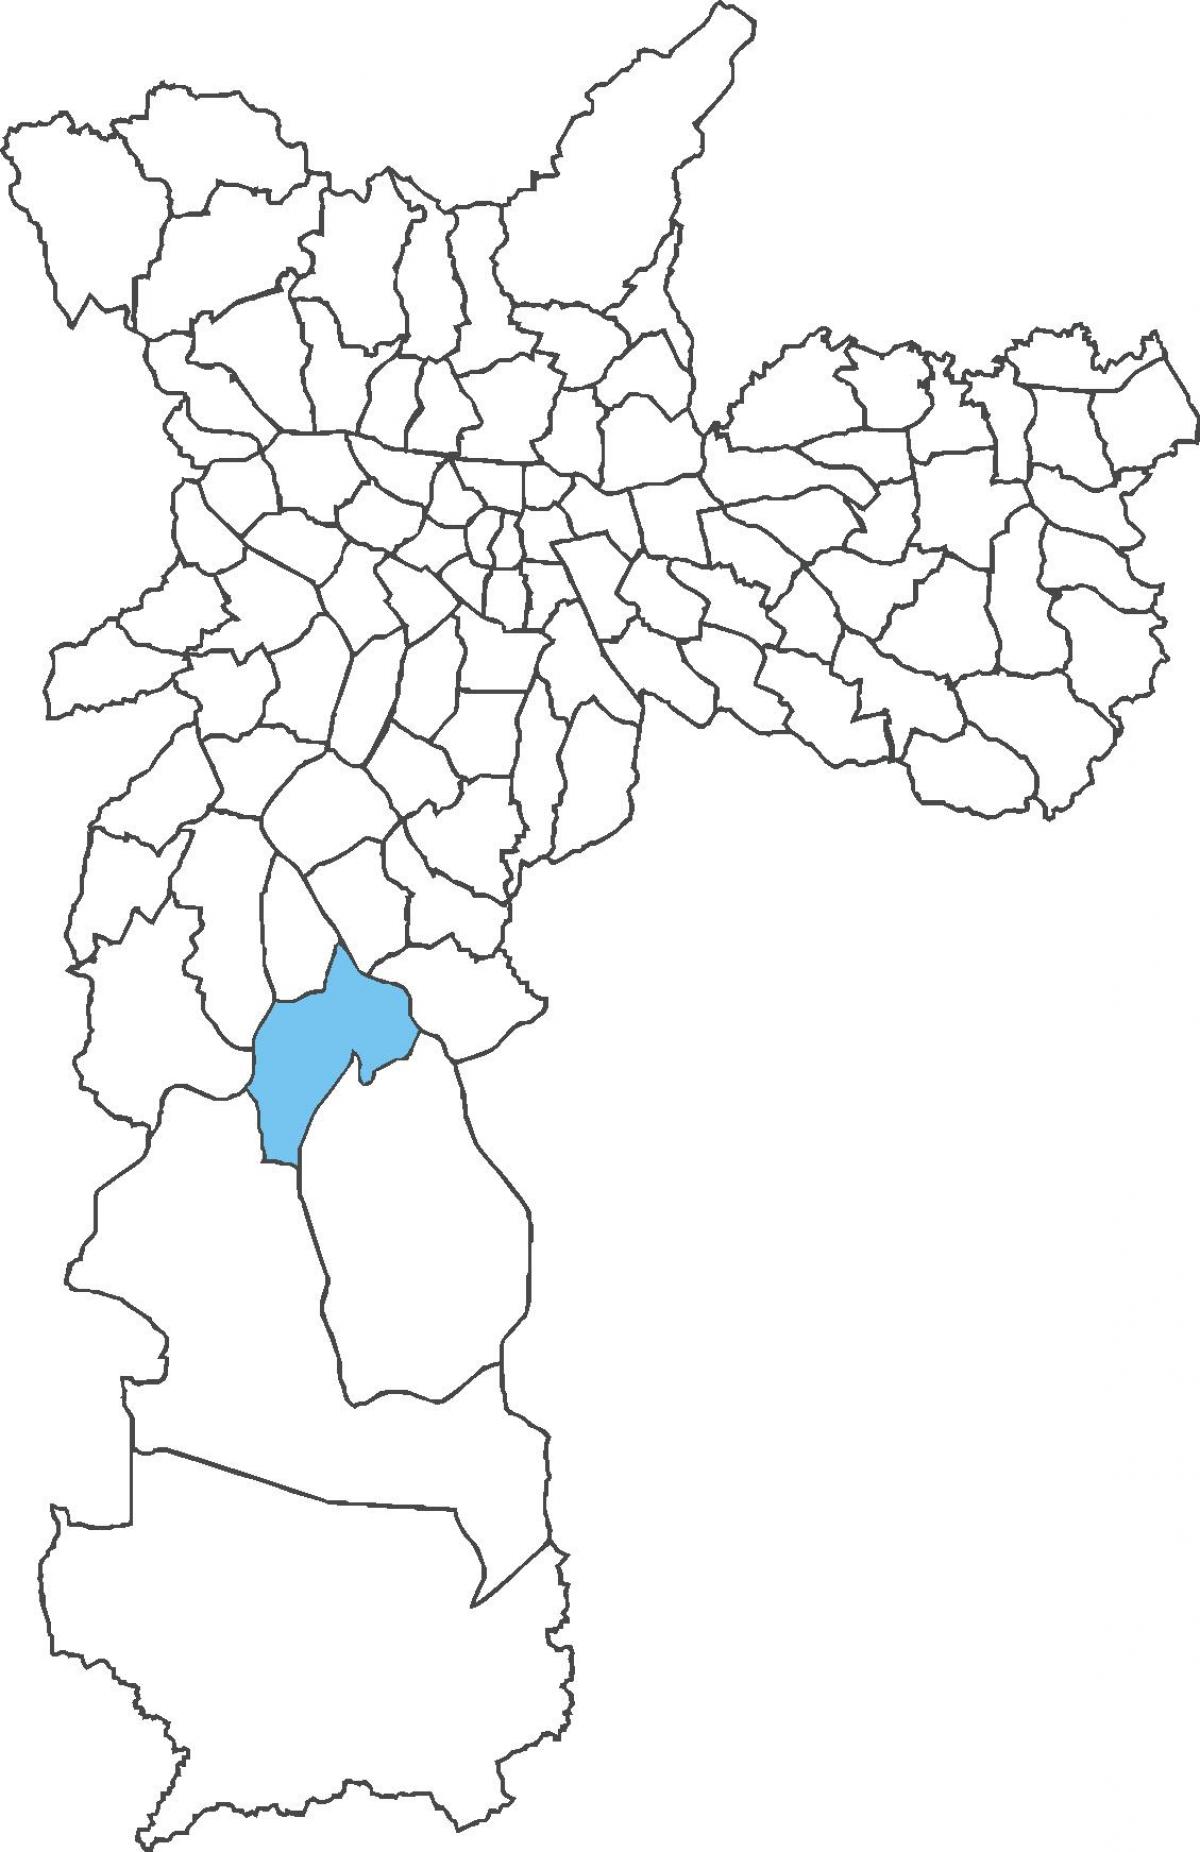 નકશો Cidade Dutra જિલ્લા